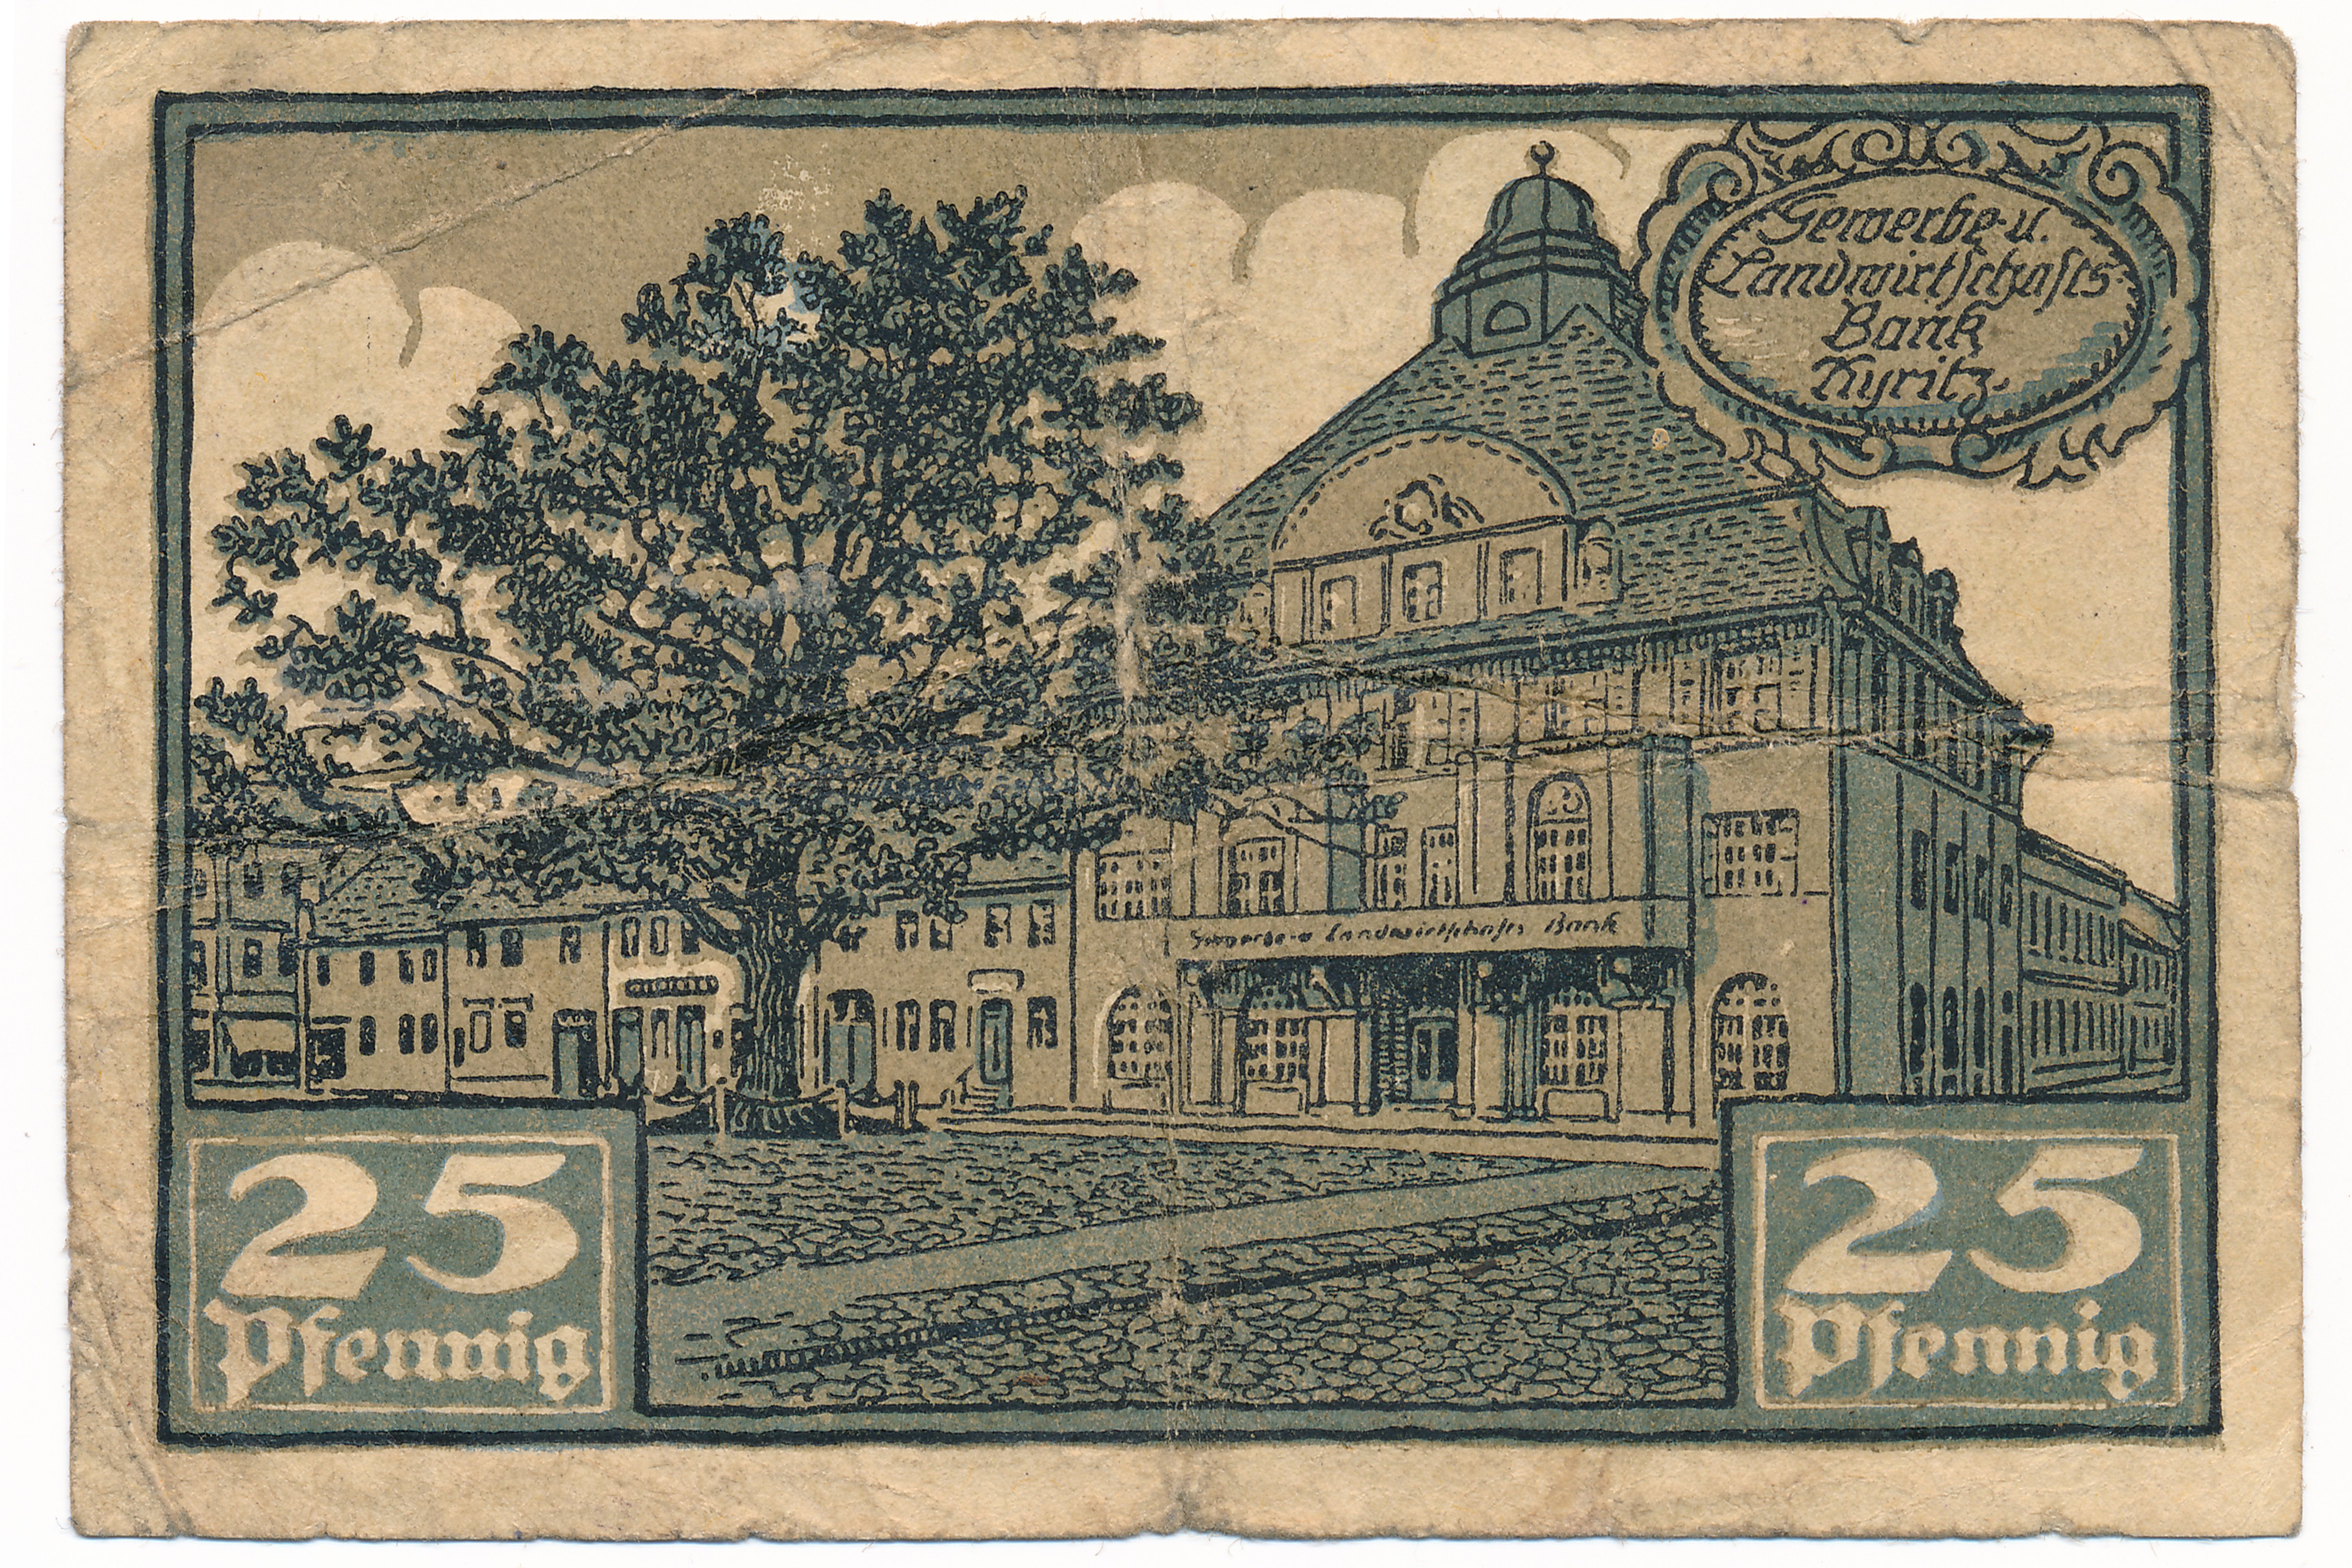 Gutschein der Gewerbe- und Landwirtschafts Bank in Kyritz, 25 Pfennig (Museumsfabrik Pritzwalk CC BY-SA)